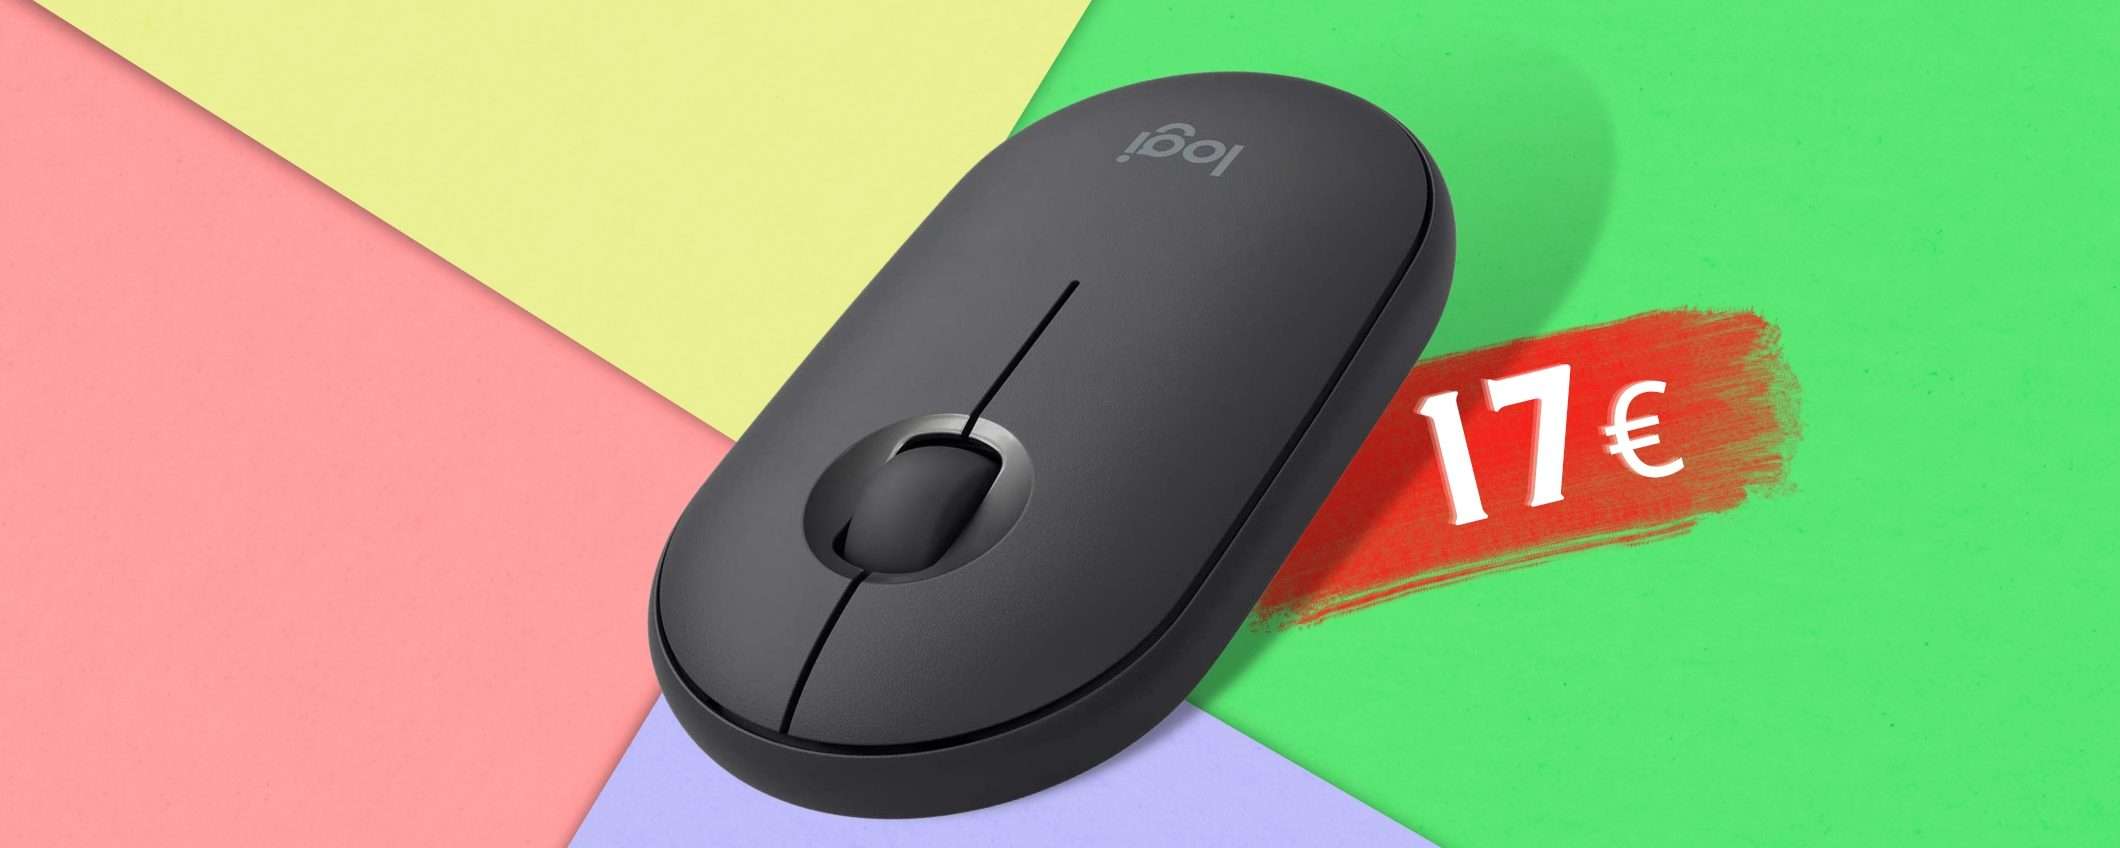 Mouse Bluetooth e con ricevitore: Logitech Pebble è il 2 in 1 DA AVERE